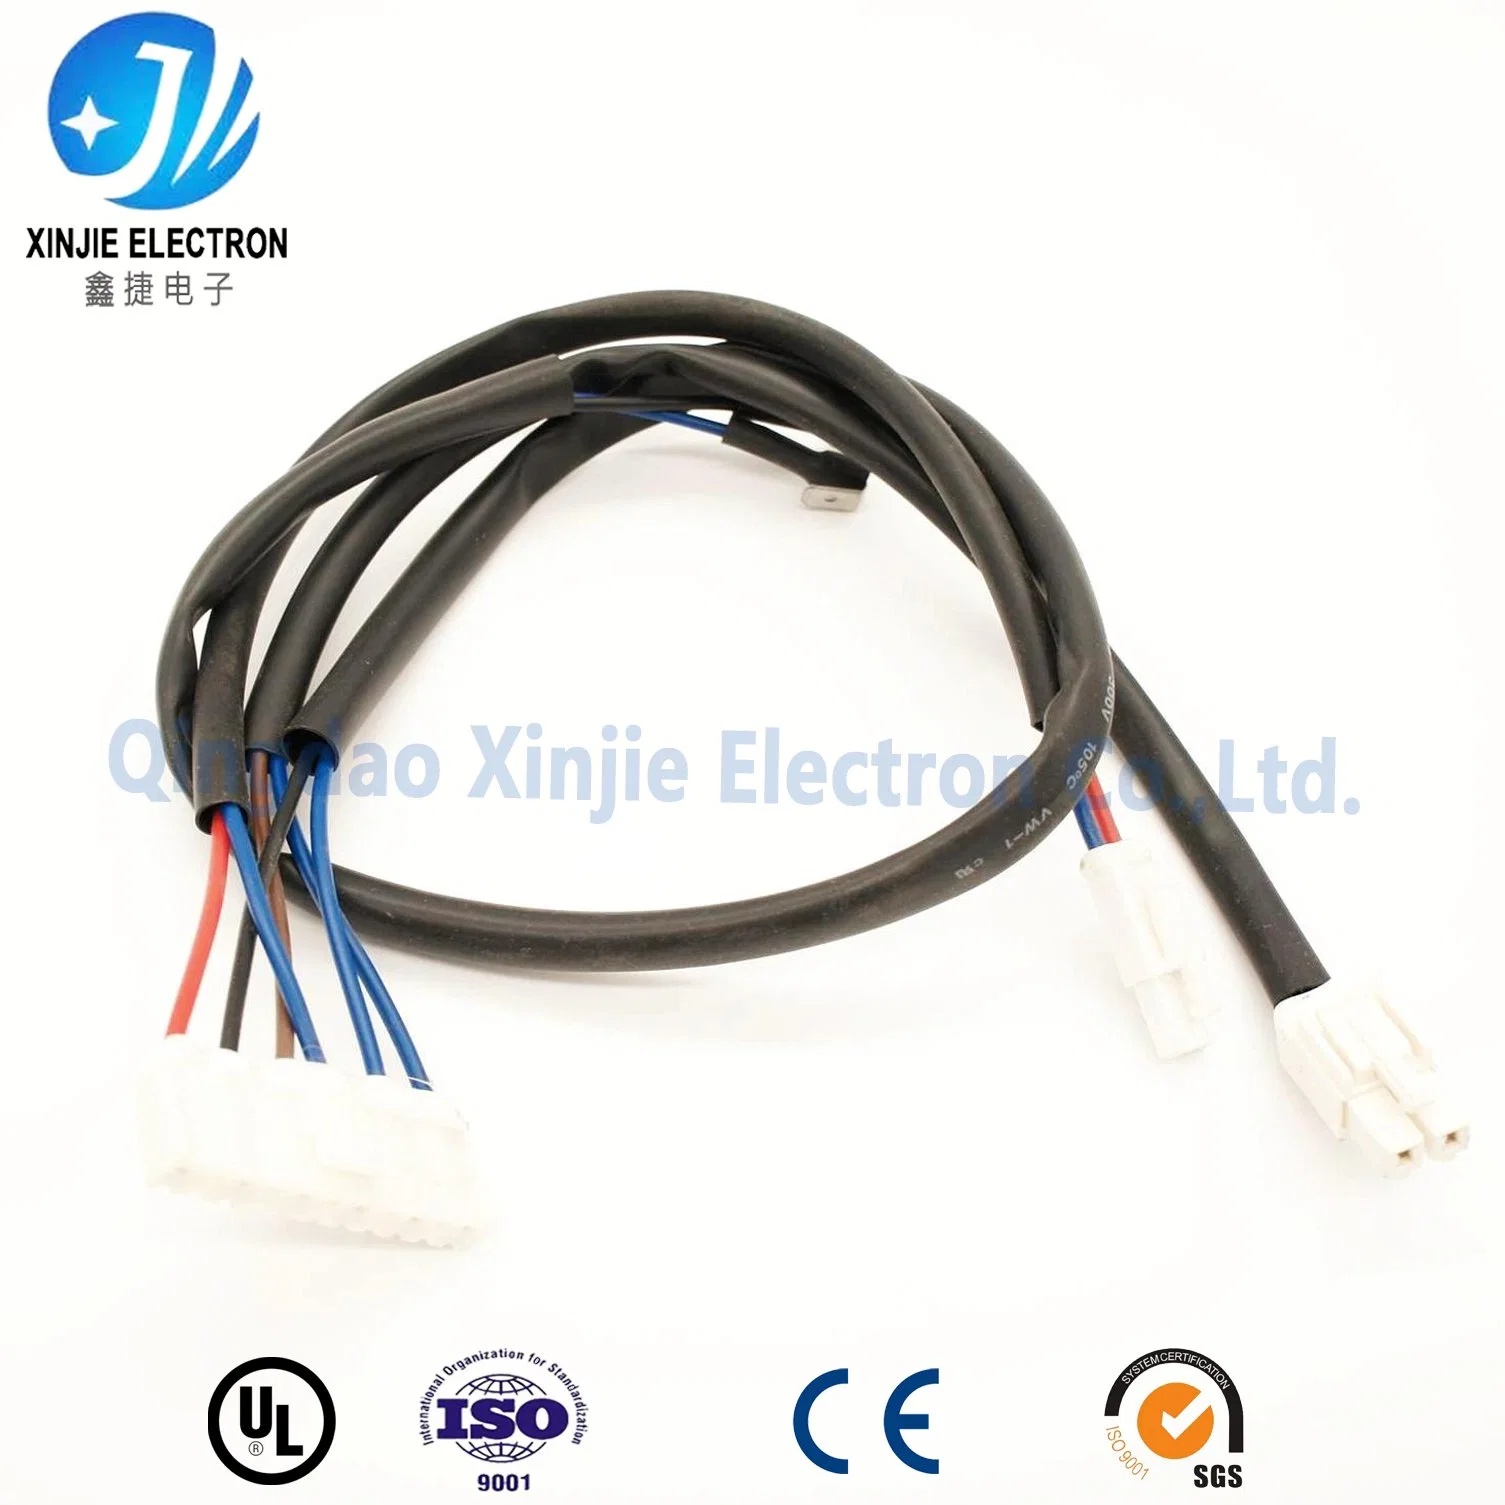 El conjunto de cable de alimentación y señal para el mazo de cables de la electrónica de consumo